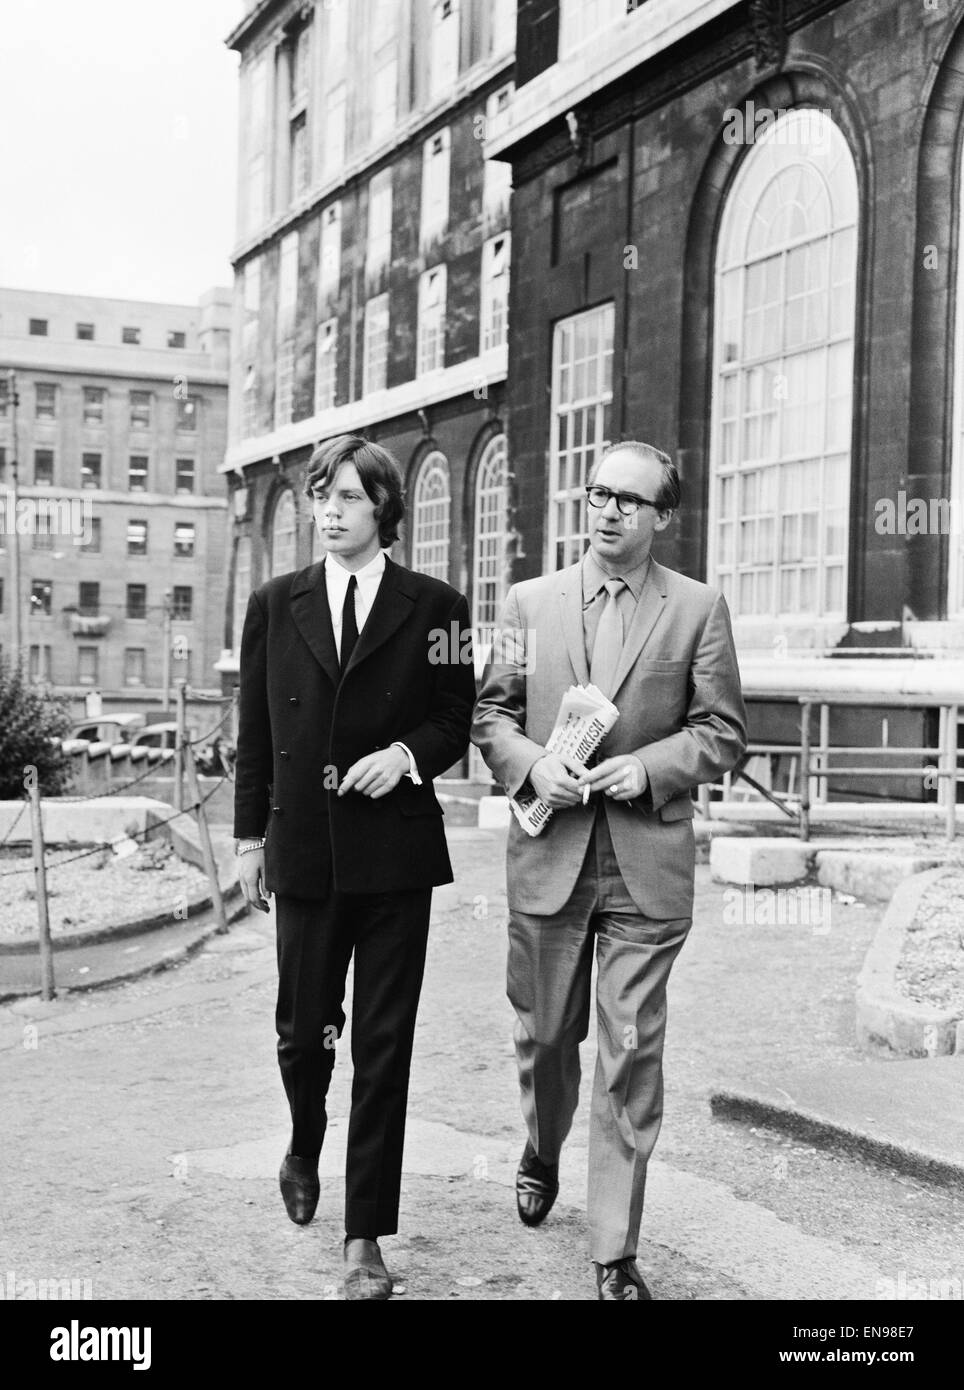 Mick Jagger des Rolling Stones avec son avocat M. Dale après réception d'un Parkinson £32 d'amende pour des délits de la route. 10 août 1964. Banque D'Images